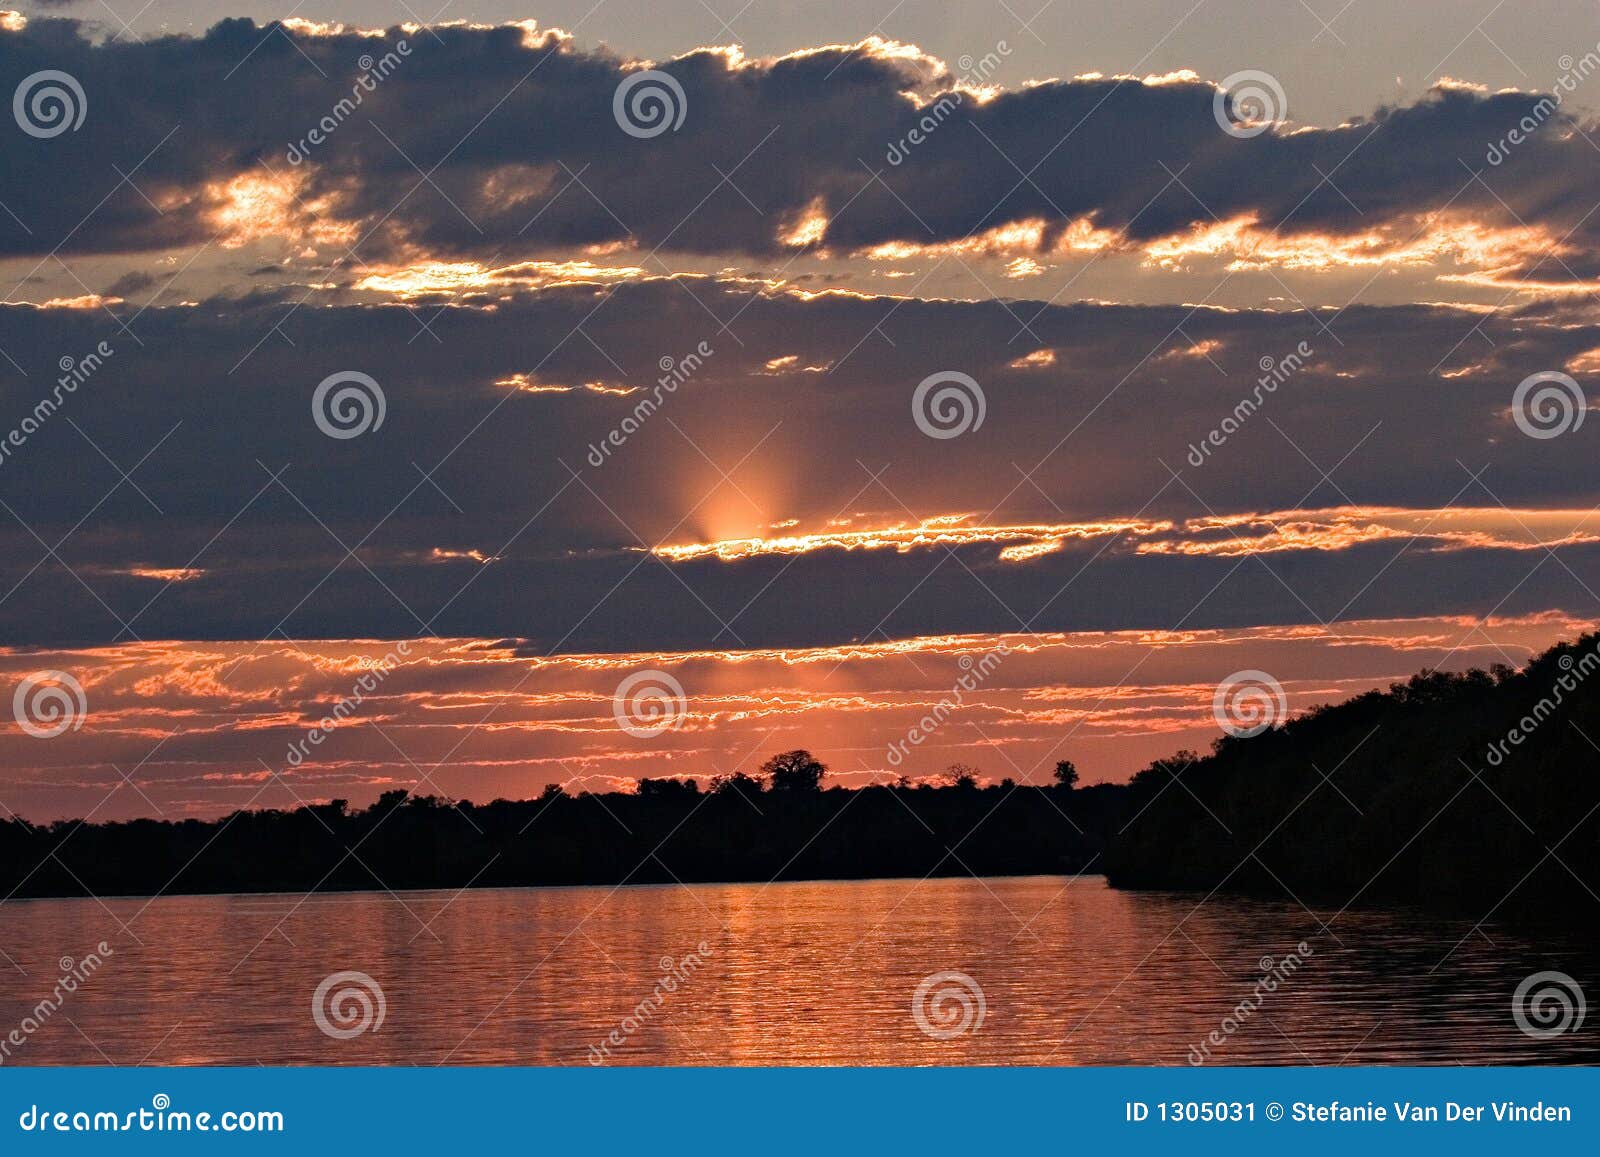 sunset on the zambezi